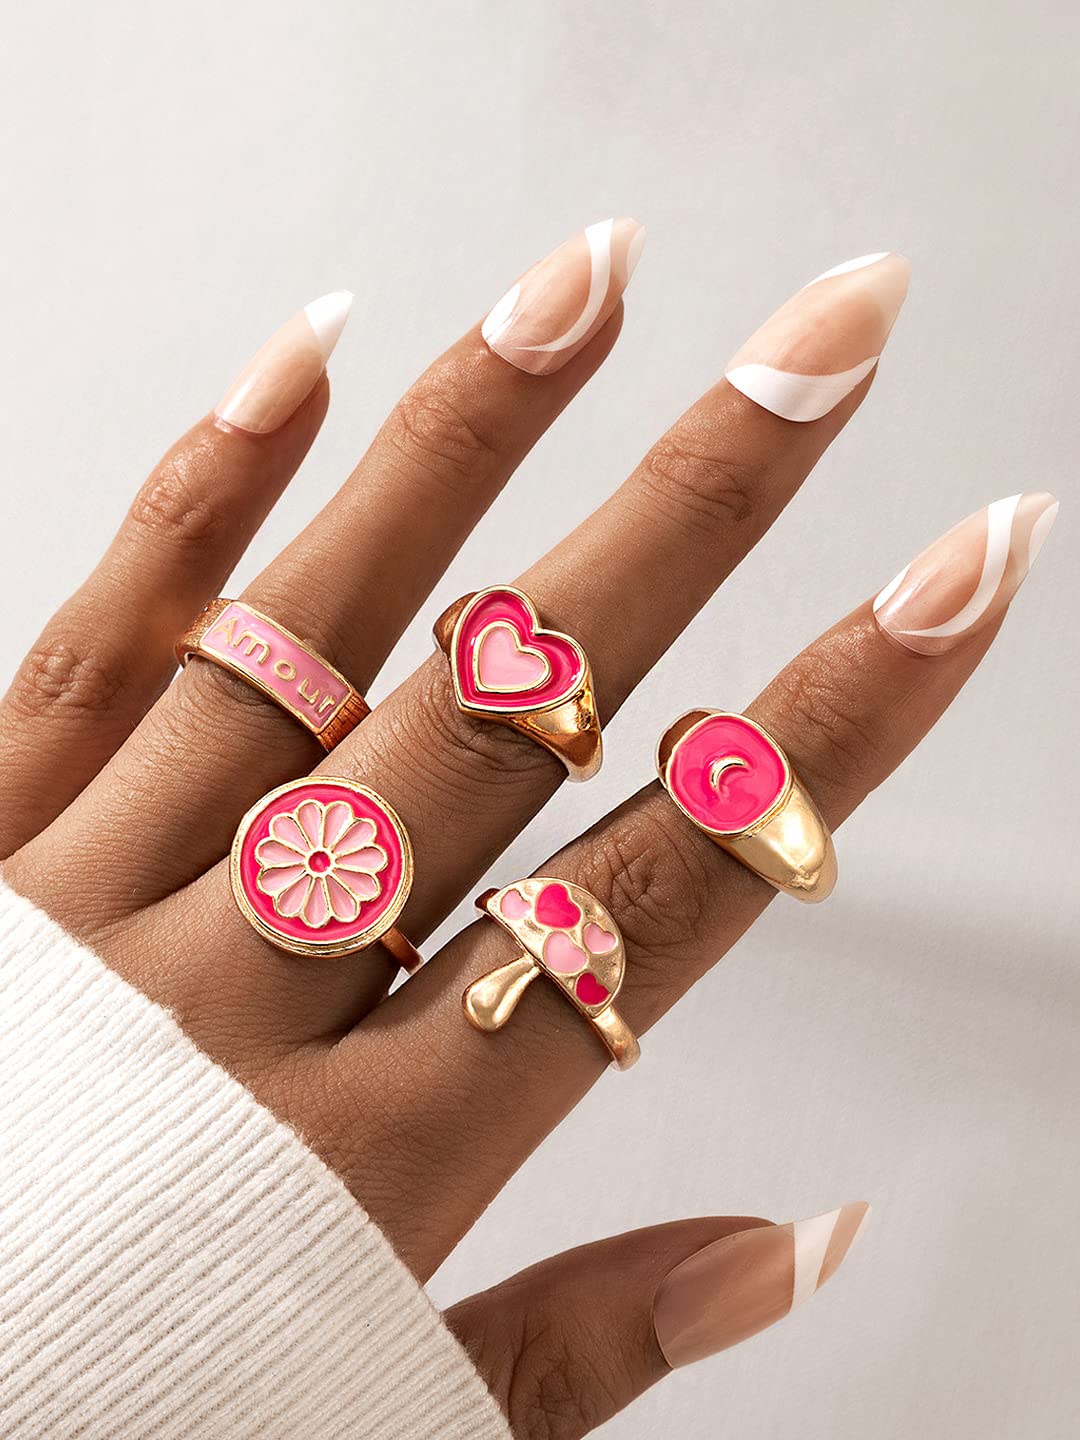 Princess Cut 3.10 Carat Moissanite Wedding Ring Set 18k White Gold Sizes 5  6 7 8 | eBay